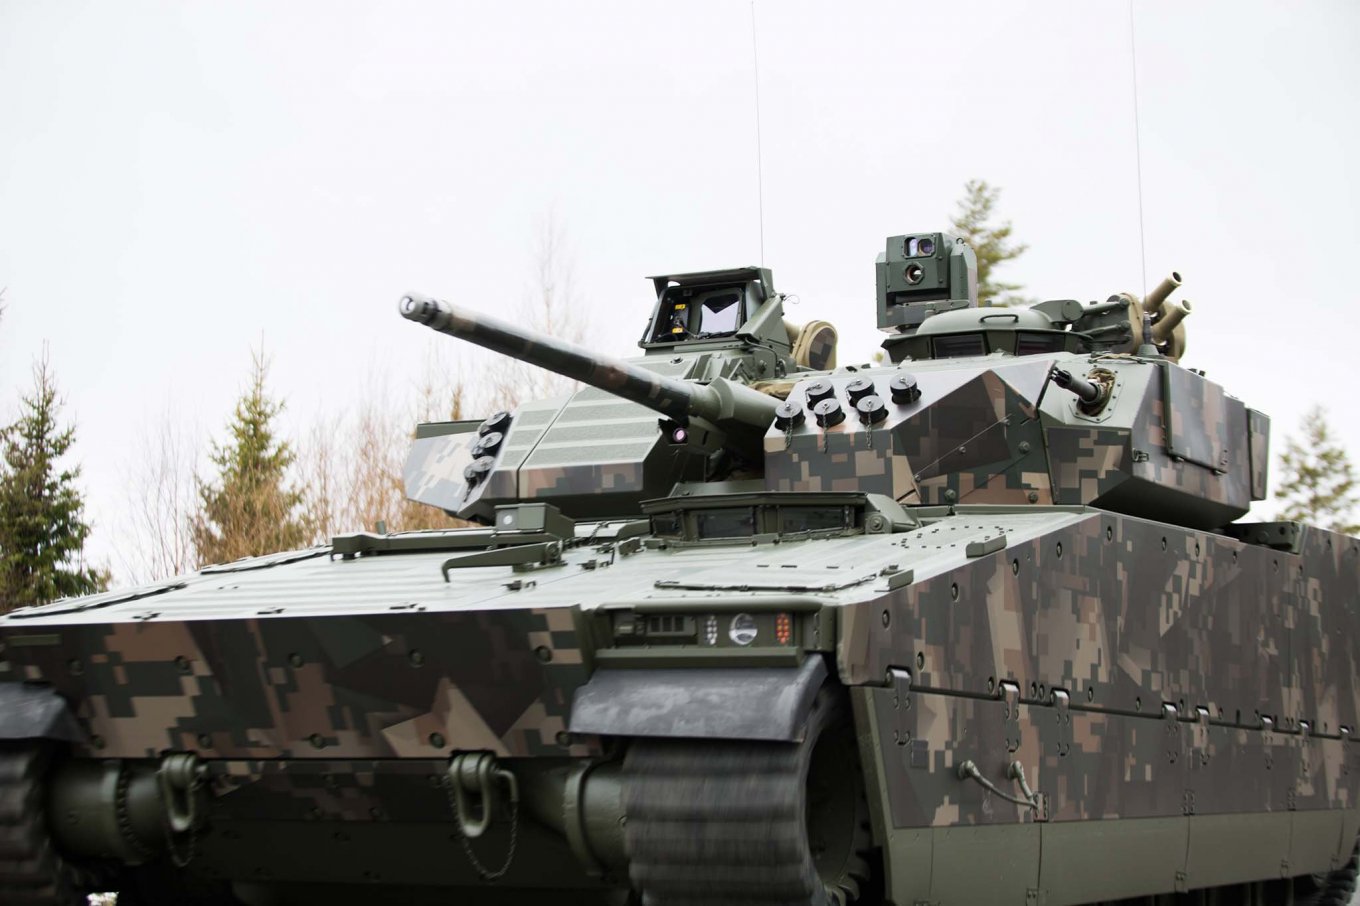 CV90 MkIV